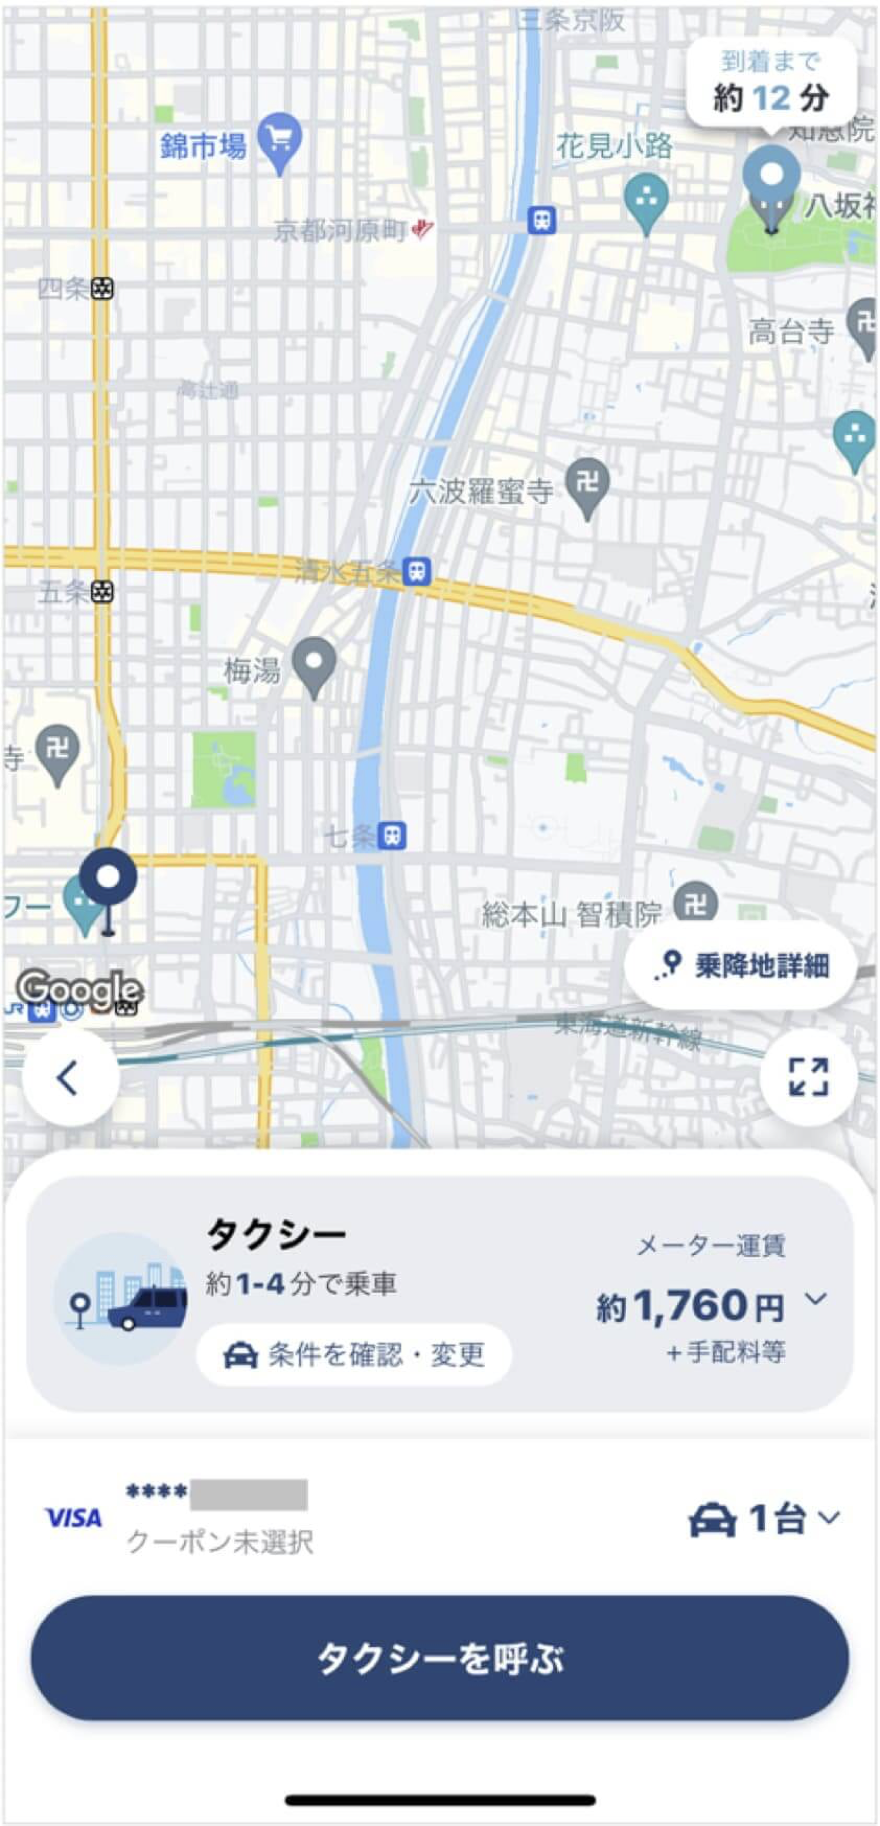 京都駅から八坂神社までのタクシー料金・所要時間まとめ